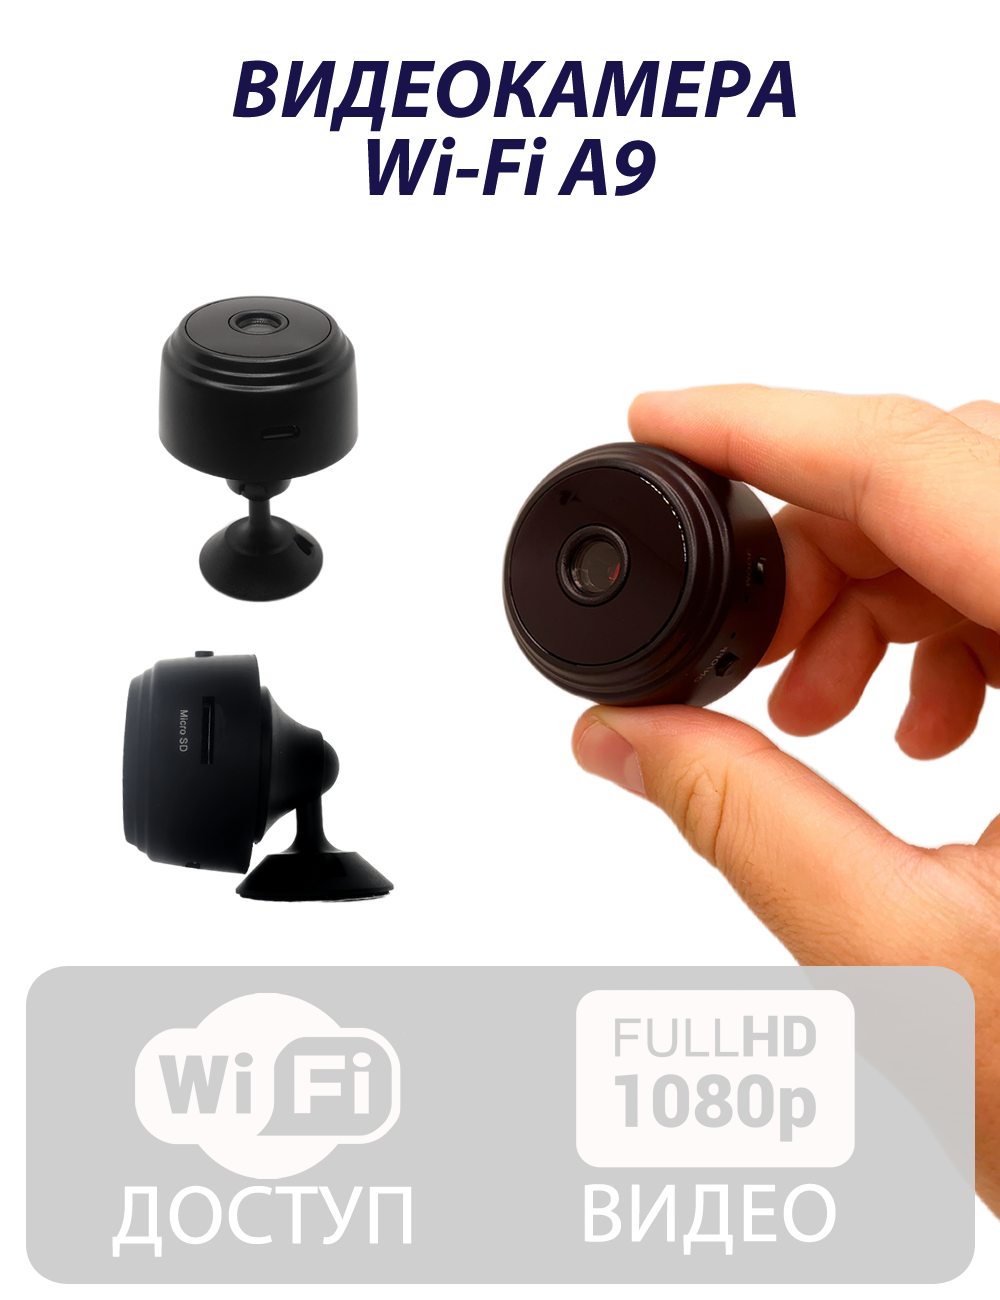 Мини камера видеонаблюдения A9 Wi-Fi